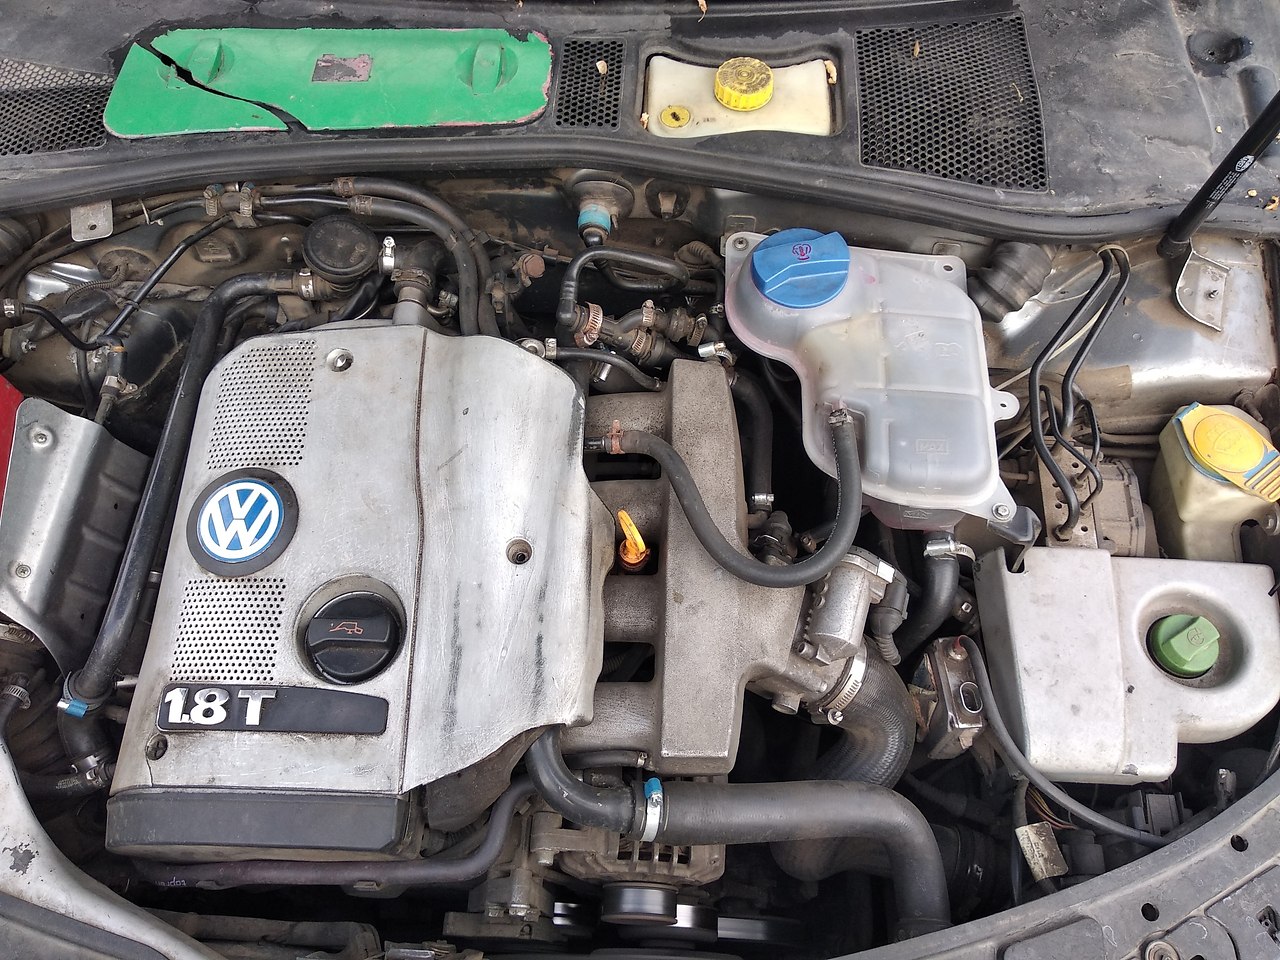 Купить двигатель на фольксваген пассат б5. Фольксваген Пассат б5 1.8 турбо. B5 Фольксваген 1.8 турбо. Двигатель Volkswagen Passat b5 1.8 t. Фольксваген Пассат 1.8т b5.